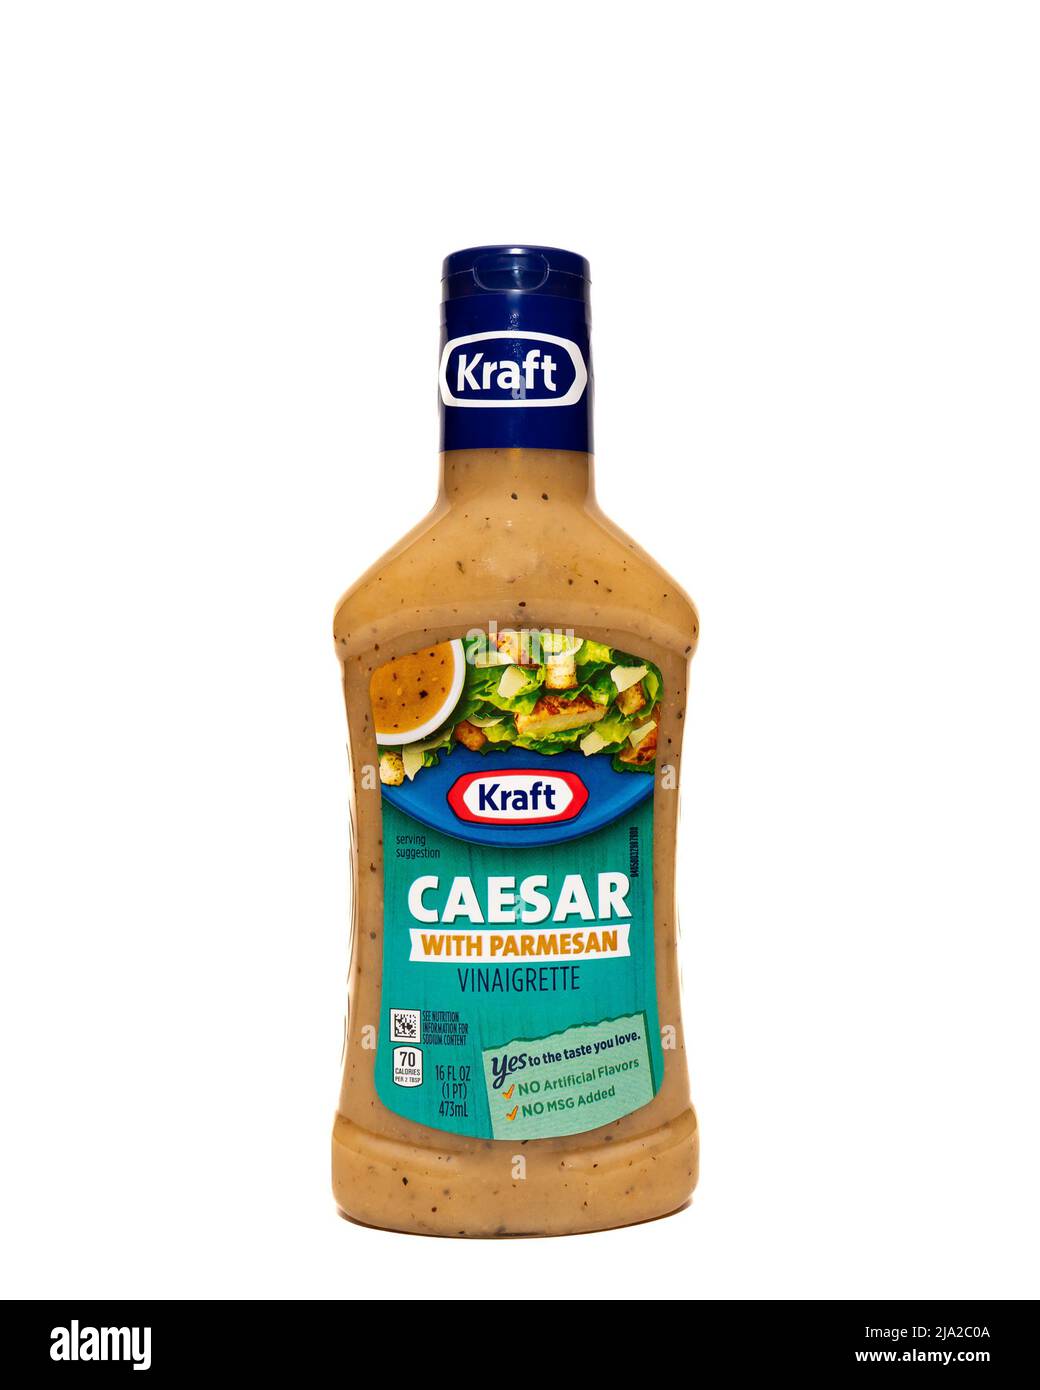 Una botella de plástico de aderezo de ensalada César Kraft con vinagreta de parmesano, aislada sobre blanco Foto de stock